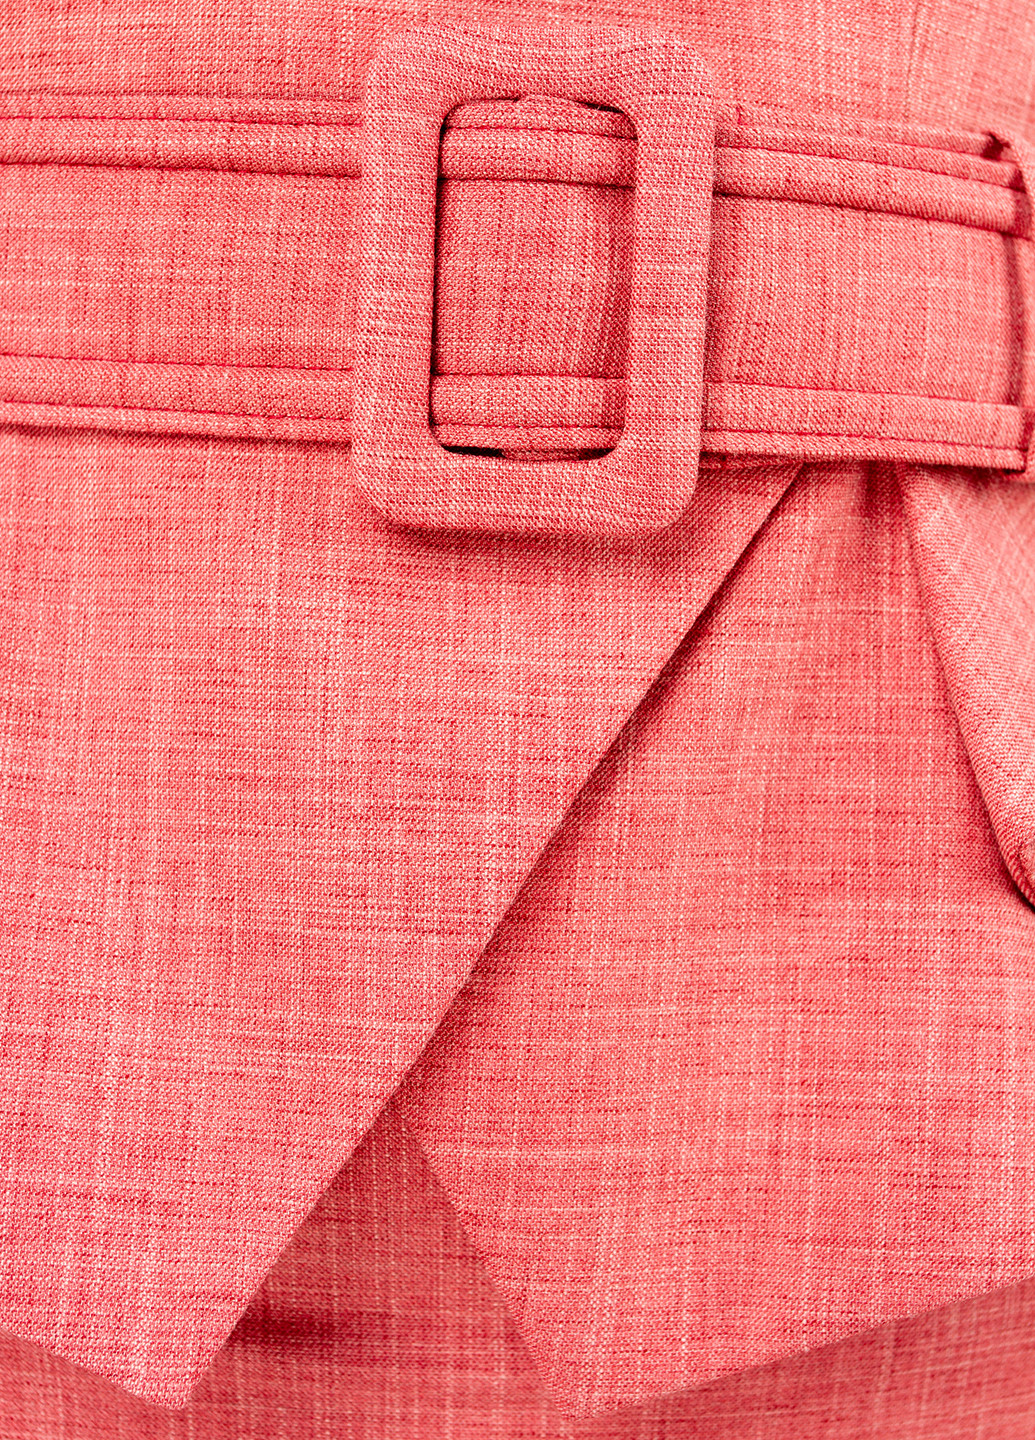 Костюм (жакет, юбка) BGL Комплект (жакет и юбка) юбочный меланж терракотовый деловой вискоза